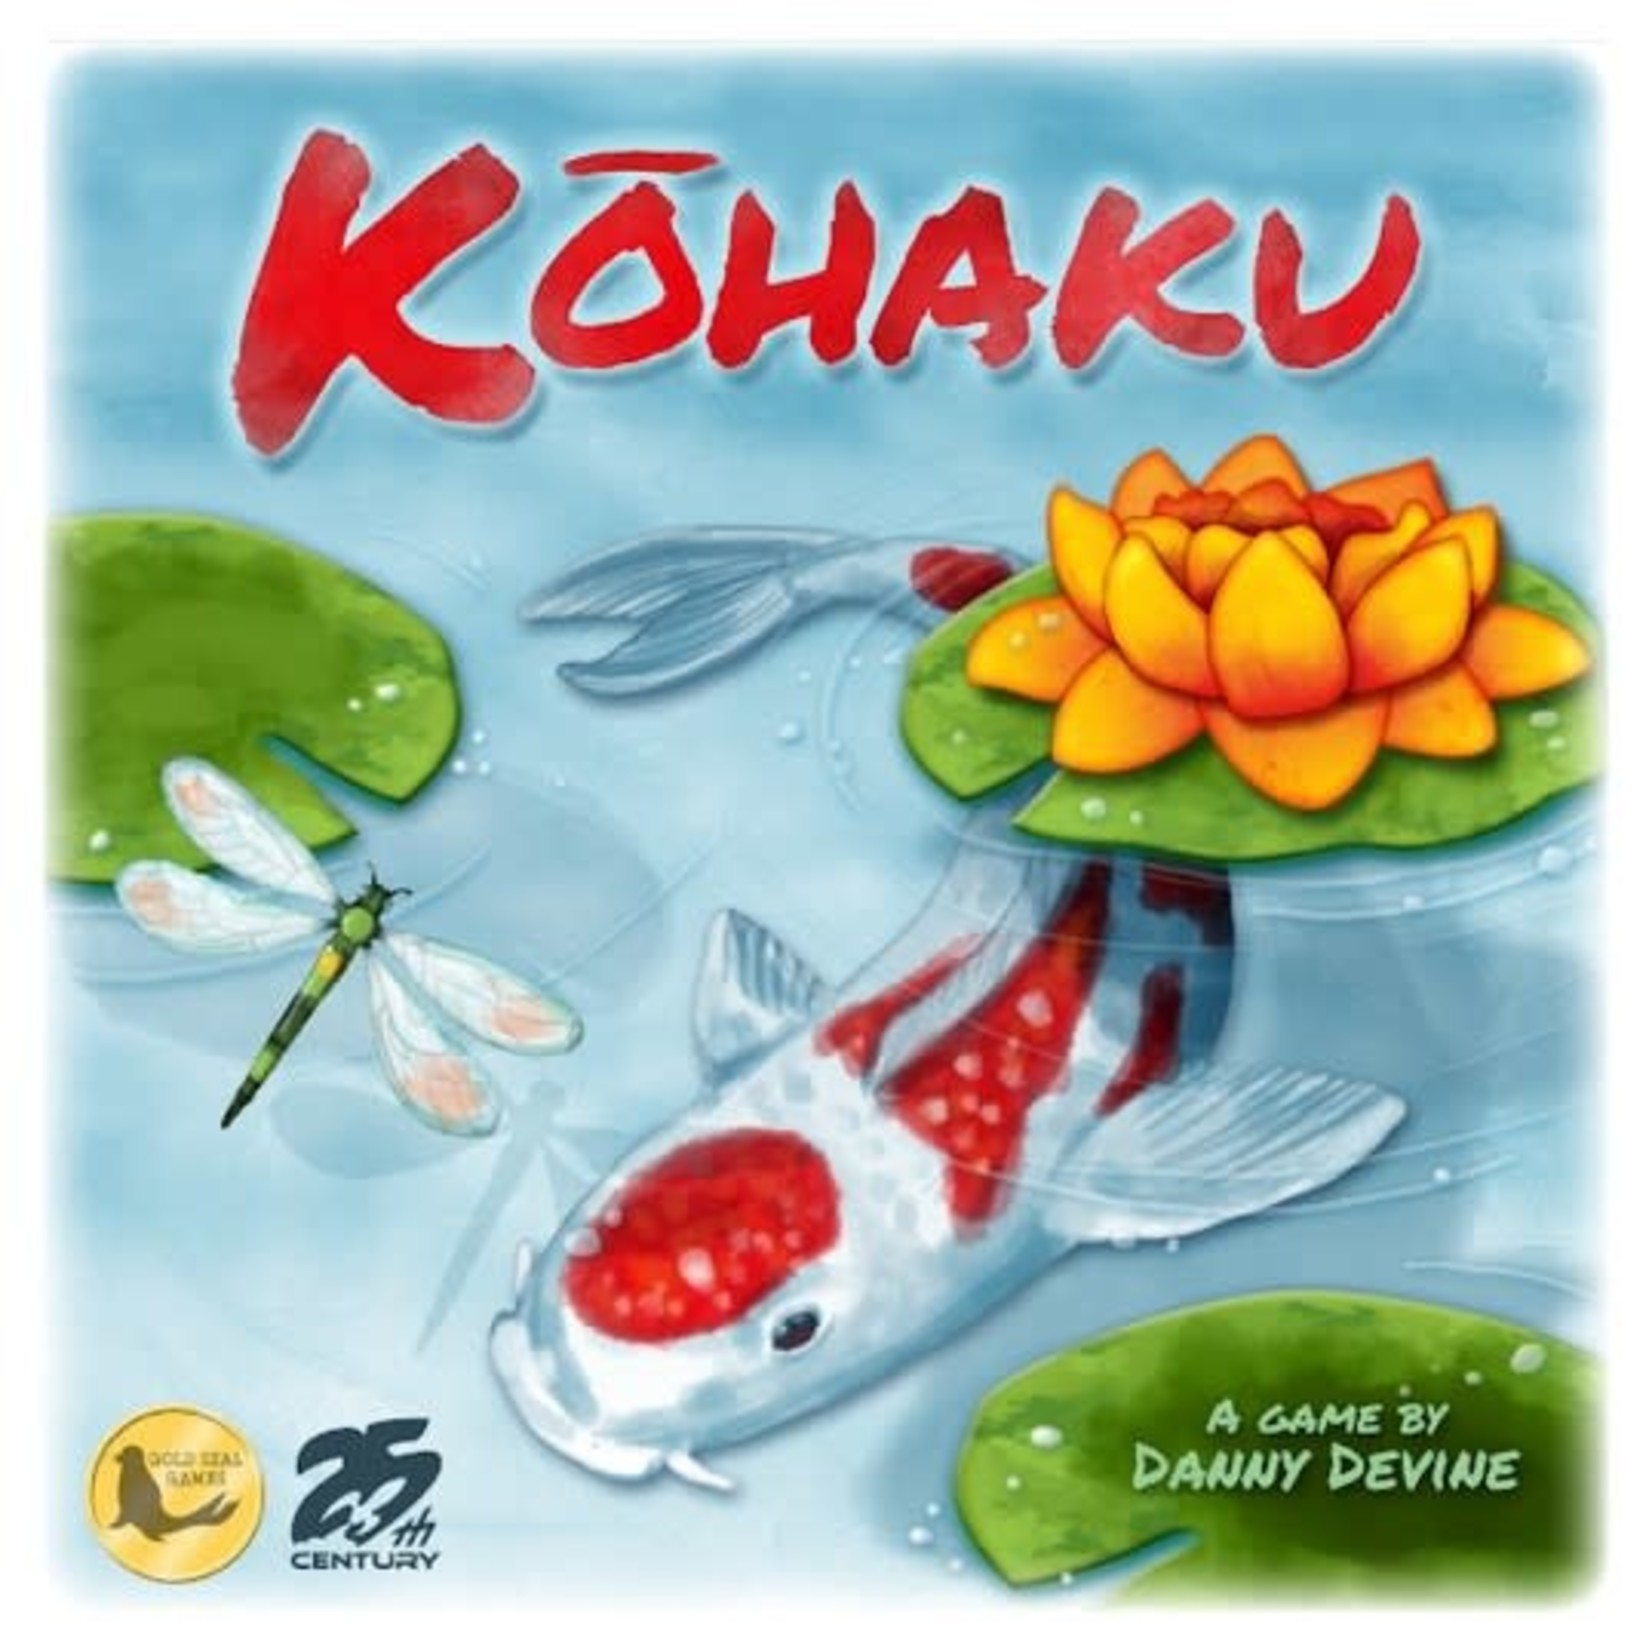 25th Century Games Kohaku 2E